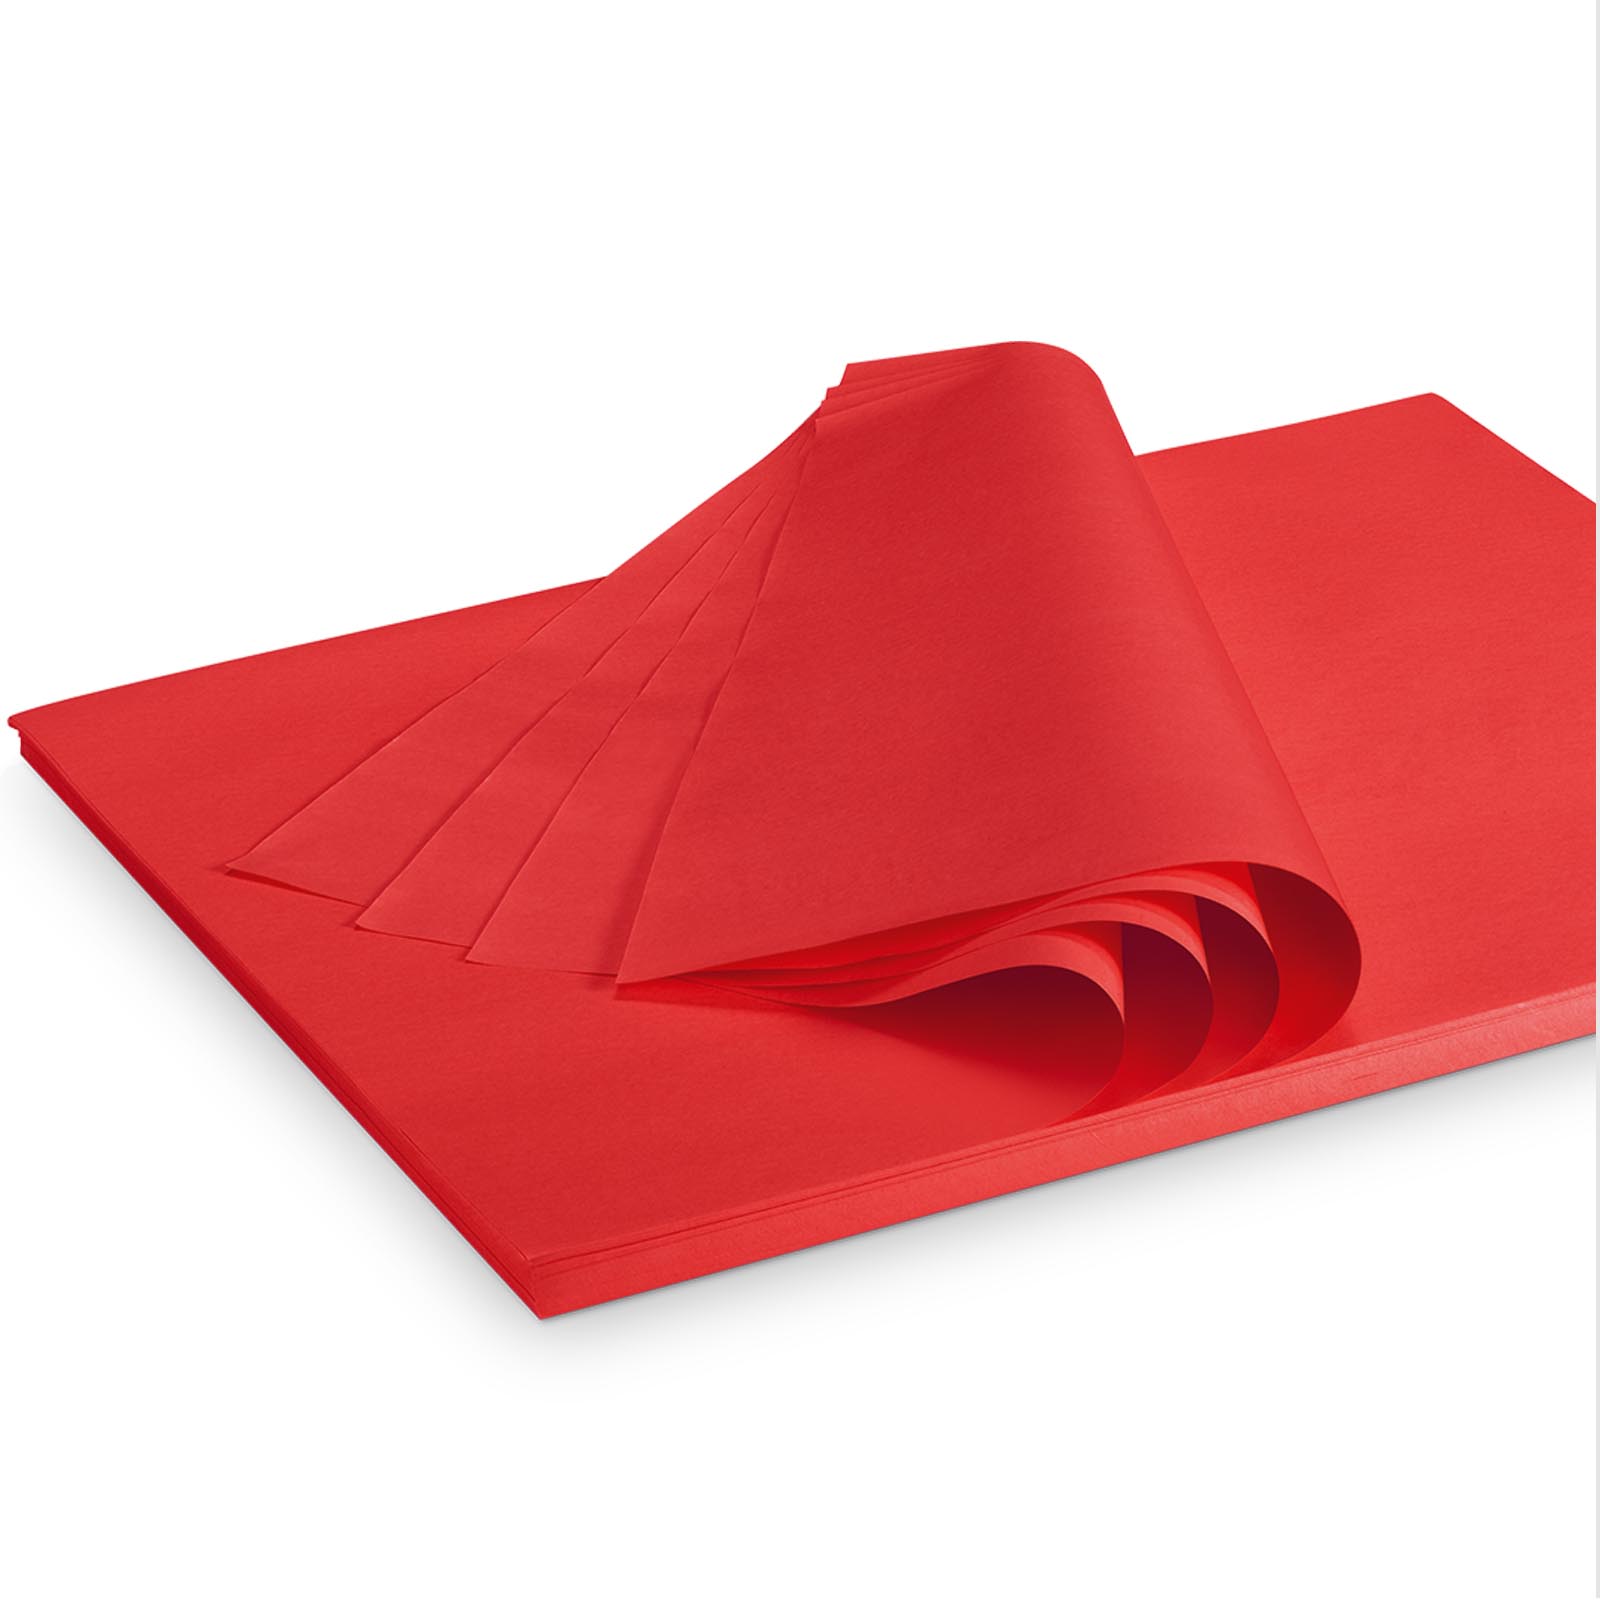 Seidenpapier 375x500mm rot 35g/m²,300 Bogen/ Karton = 2kg